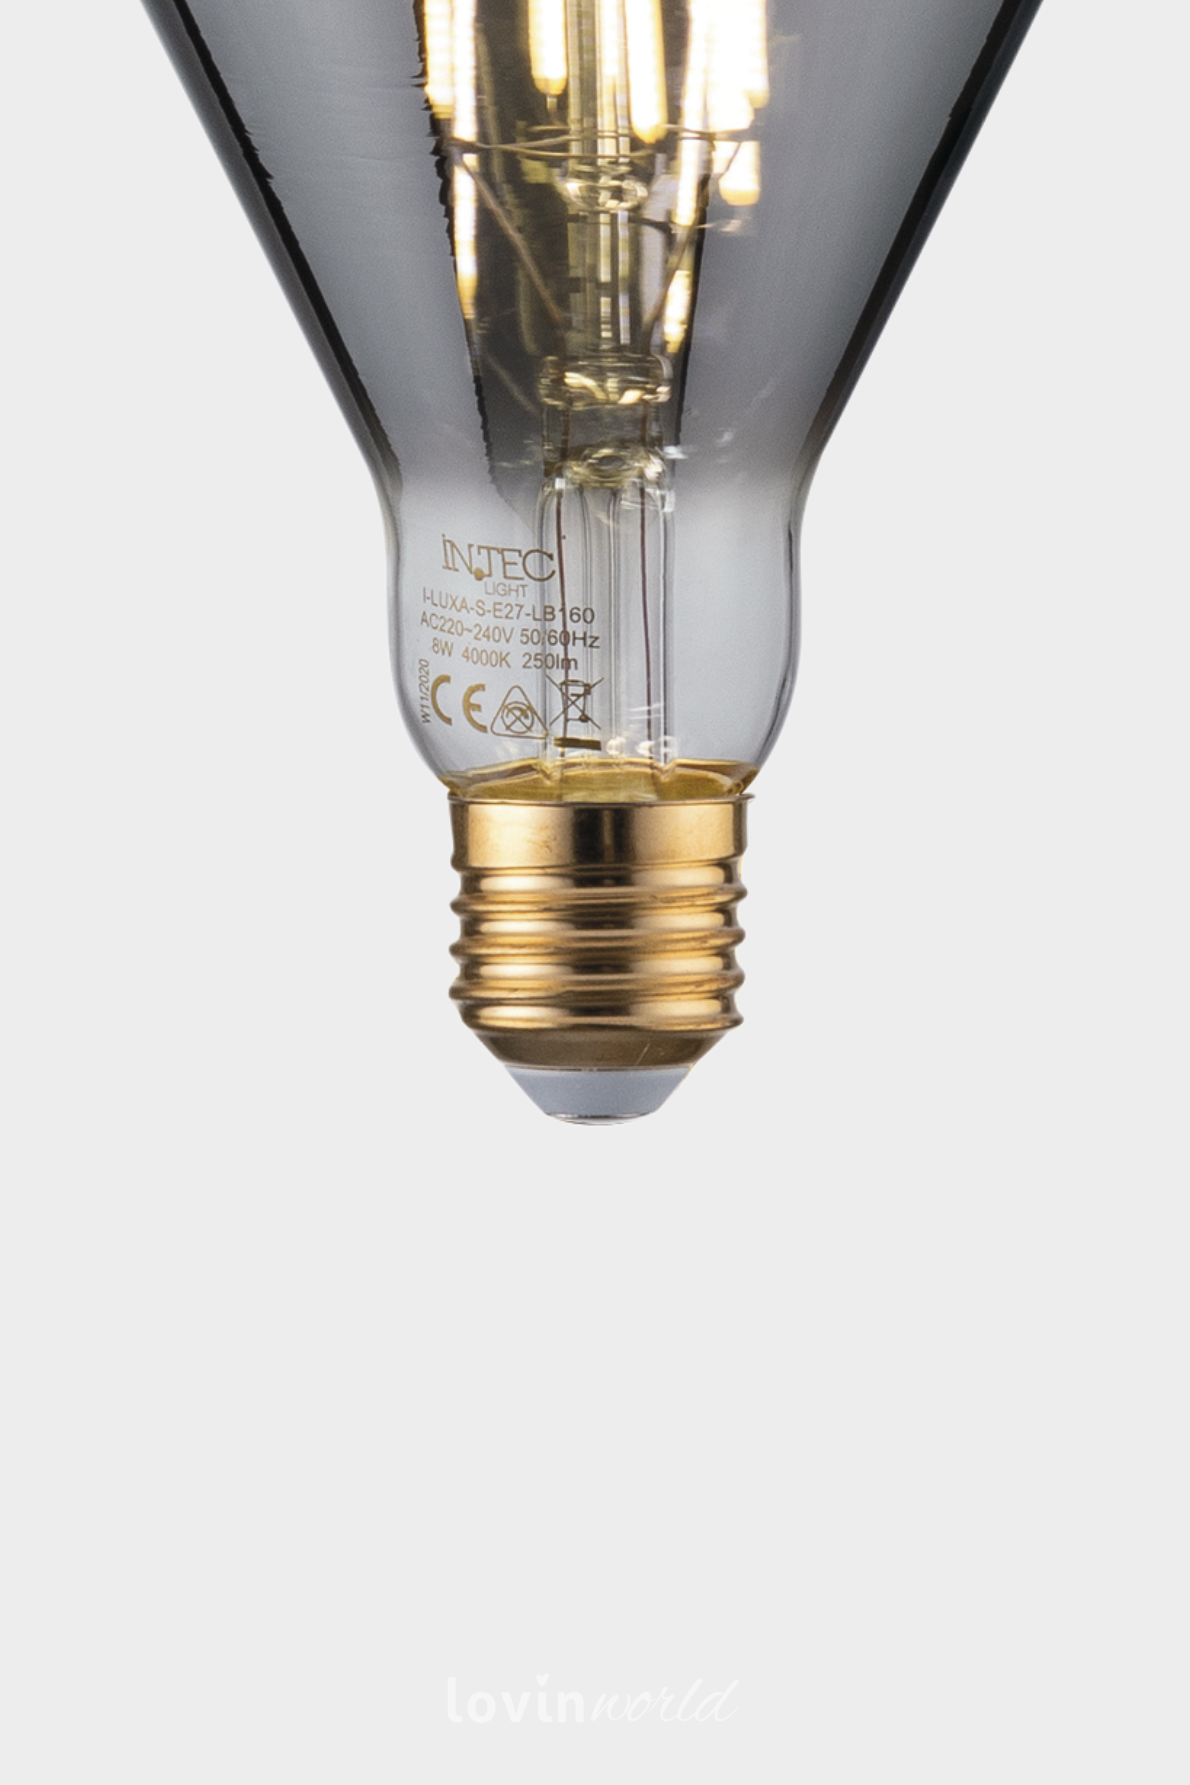 Lampadina a LED decorativa Luxa-S-E27-LB160 B-3